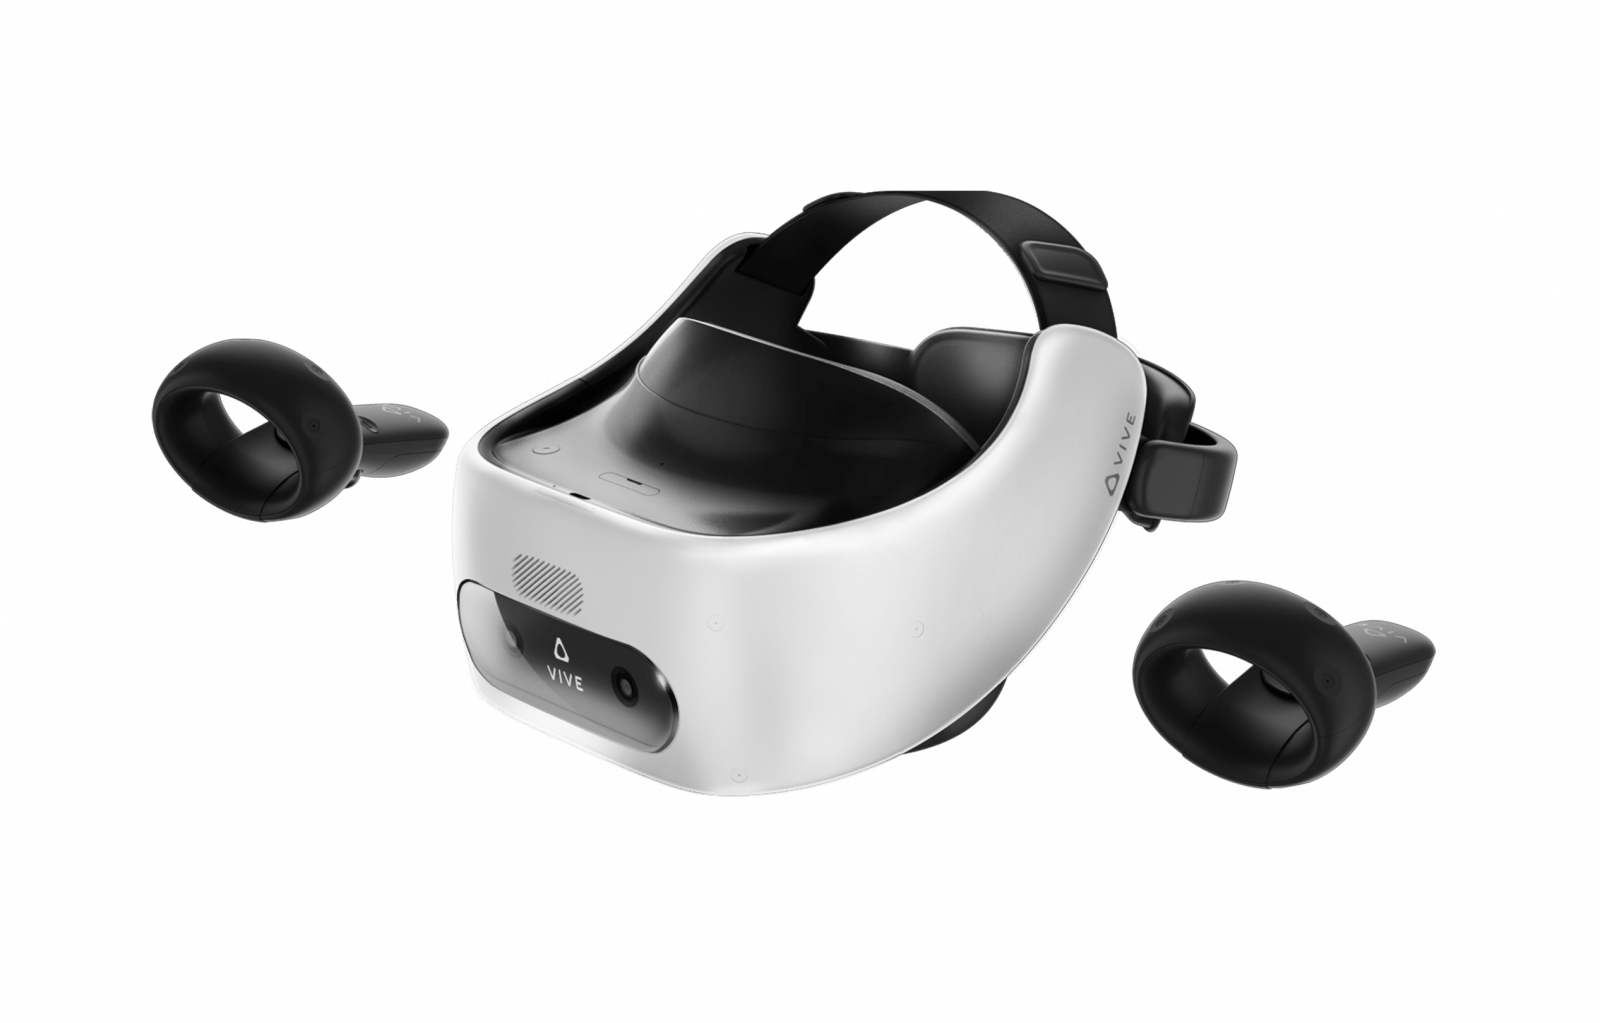 HTC VIVE представляет автономный шлем виртуальной реальности премиум-класса VIVE FOCUS PLUS